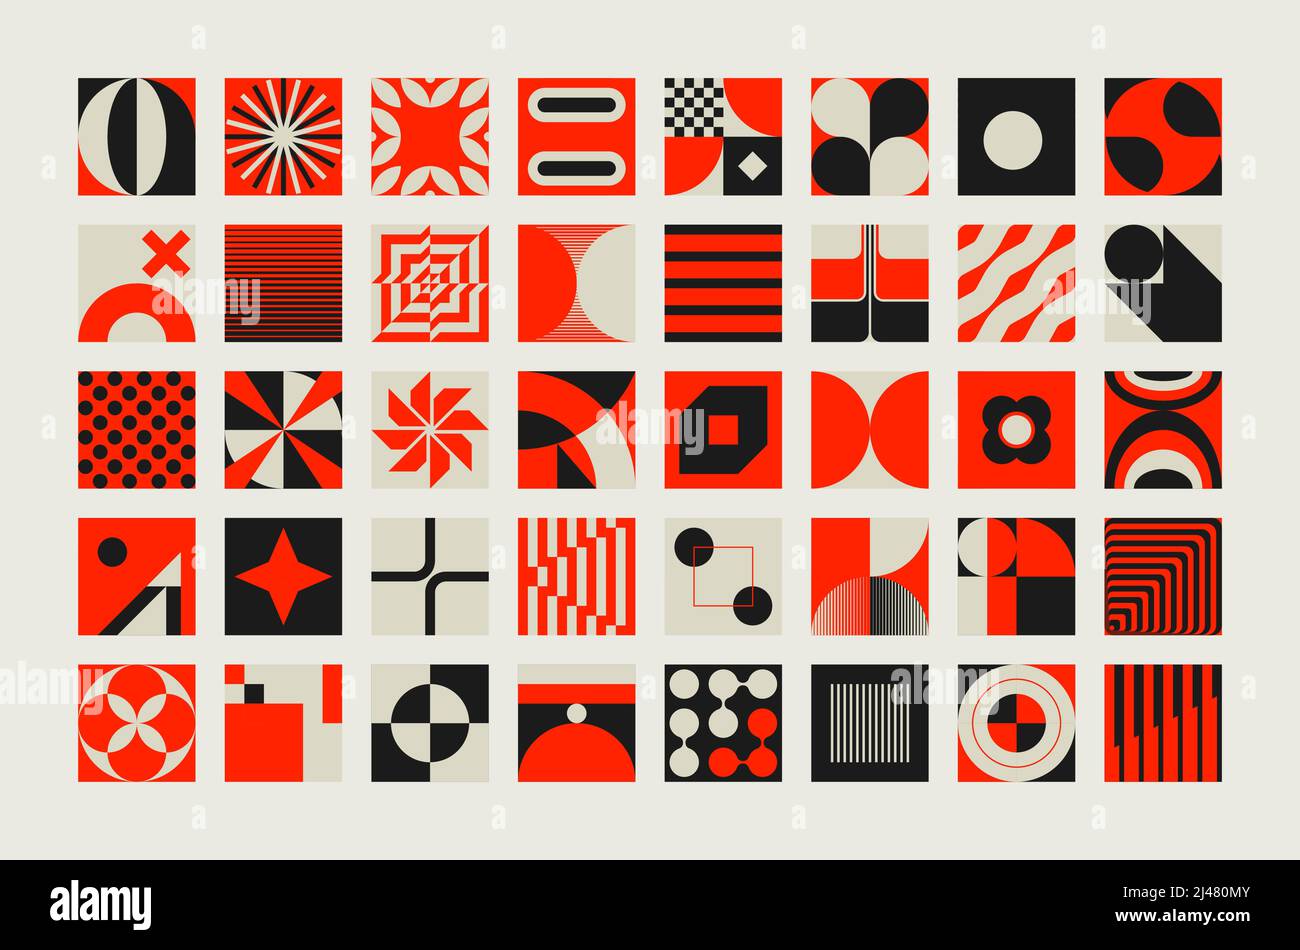 Moderne abstrakte Vektorformen Sammlung von verschiedenen einfachen geometrischen Formen und bunten Grafikelementen für Poster, Cover, Kunst, Präsentation, Drucke Stock Vektor